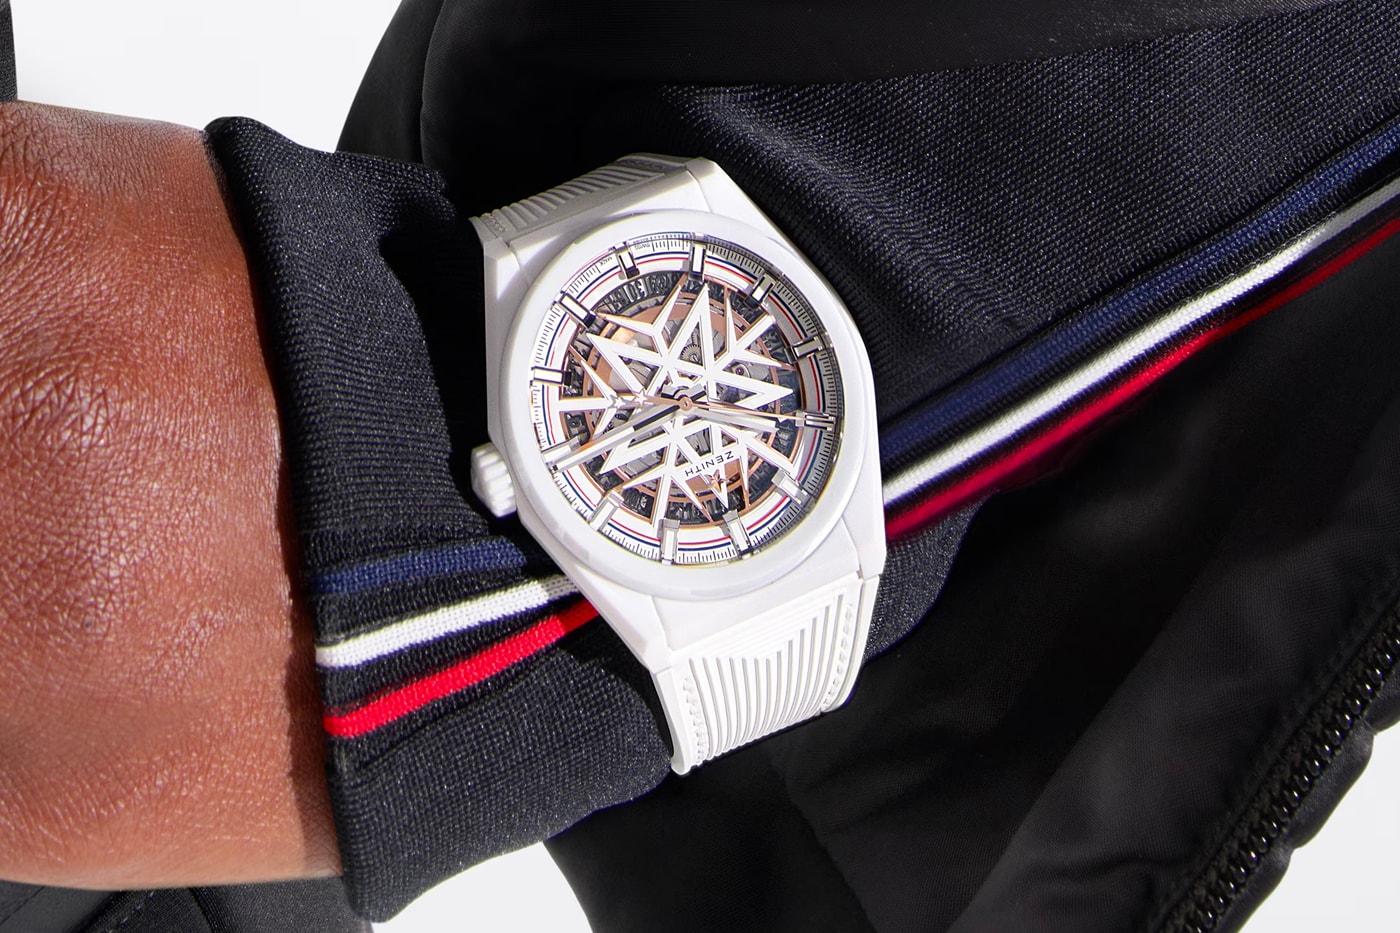 Zenith x Fusalp Ski Wear Timepiece Collaboration